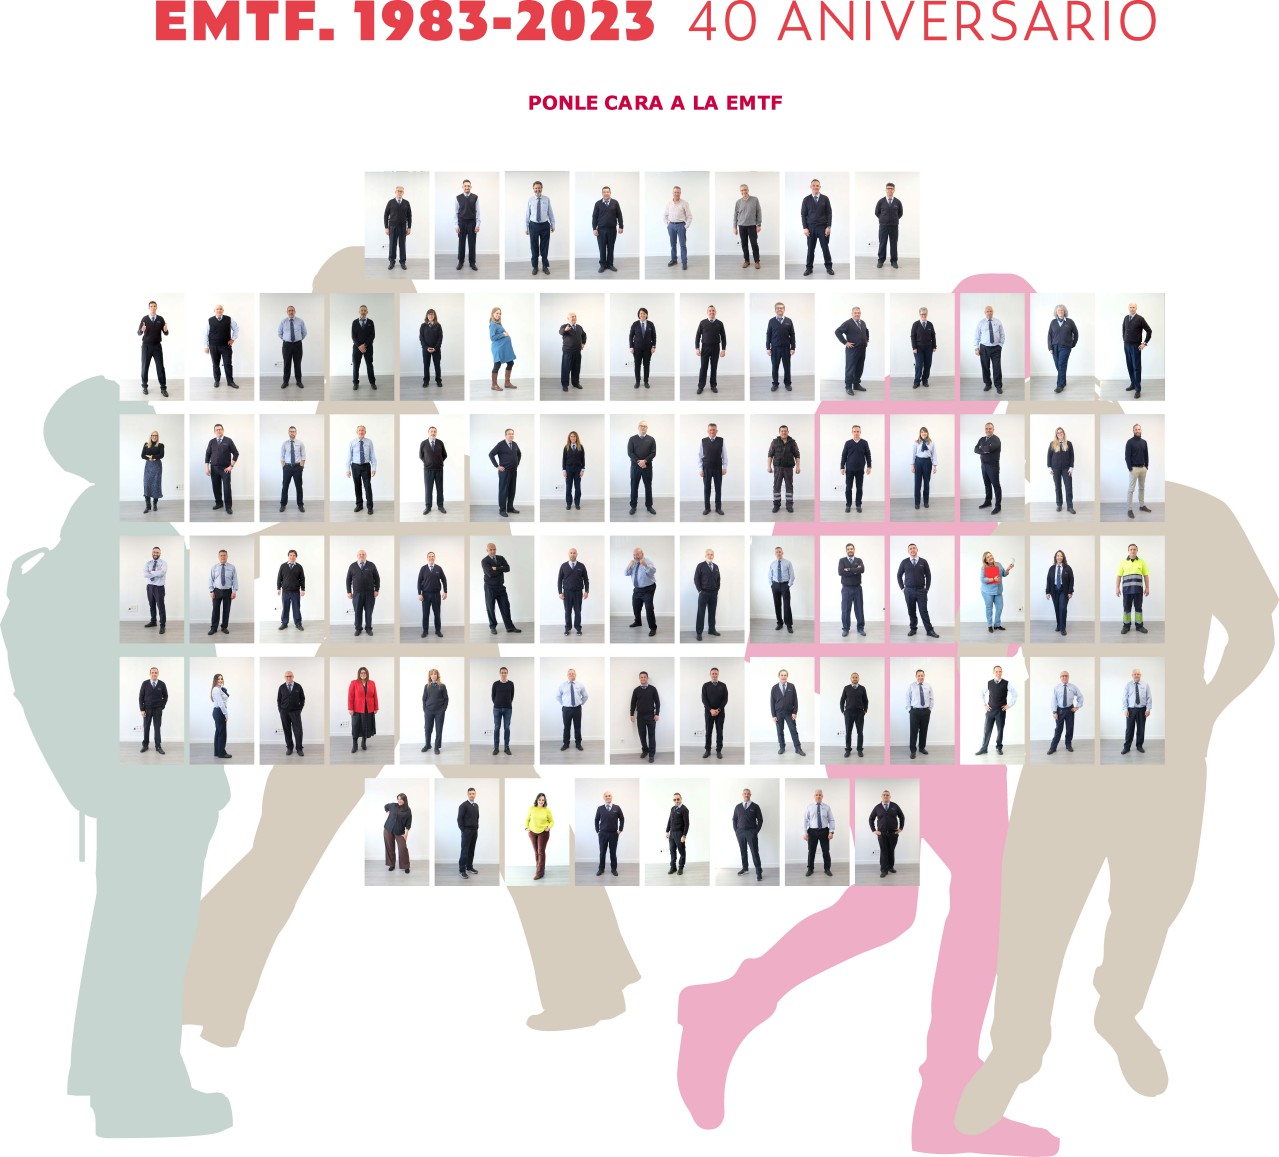 Plantilla EMTF 40 Aniversario